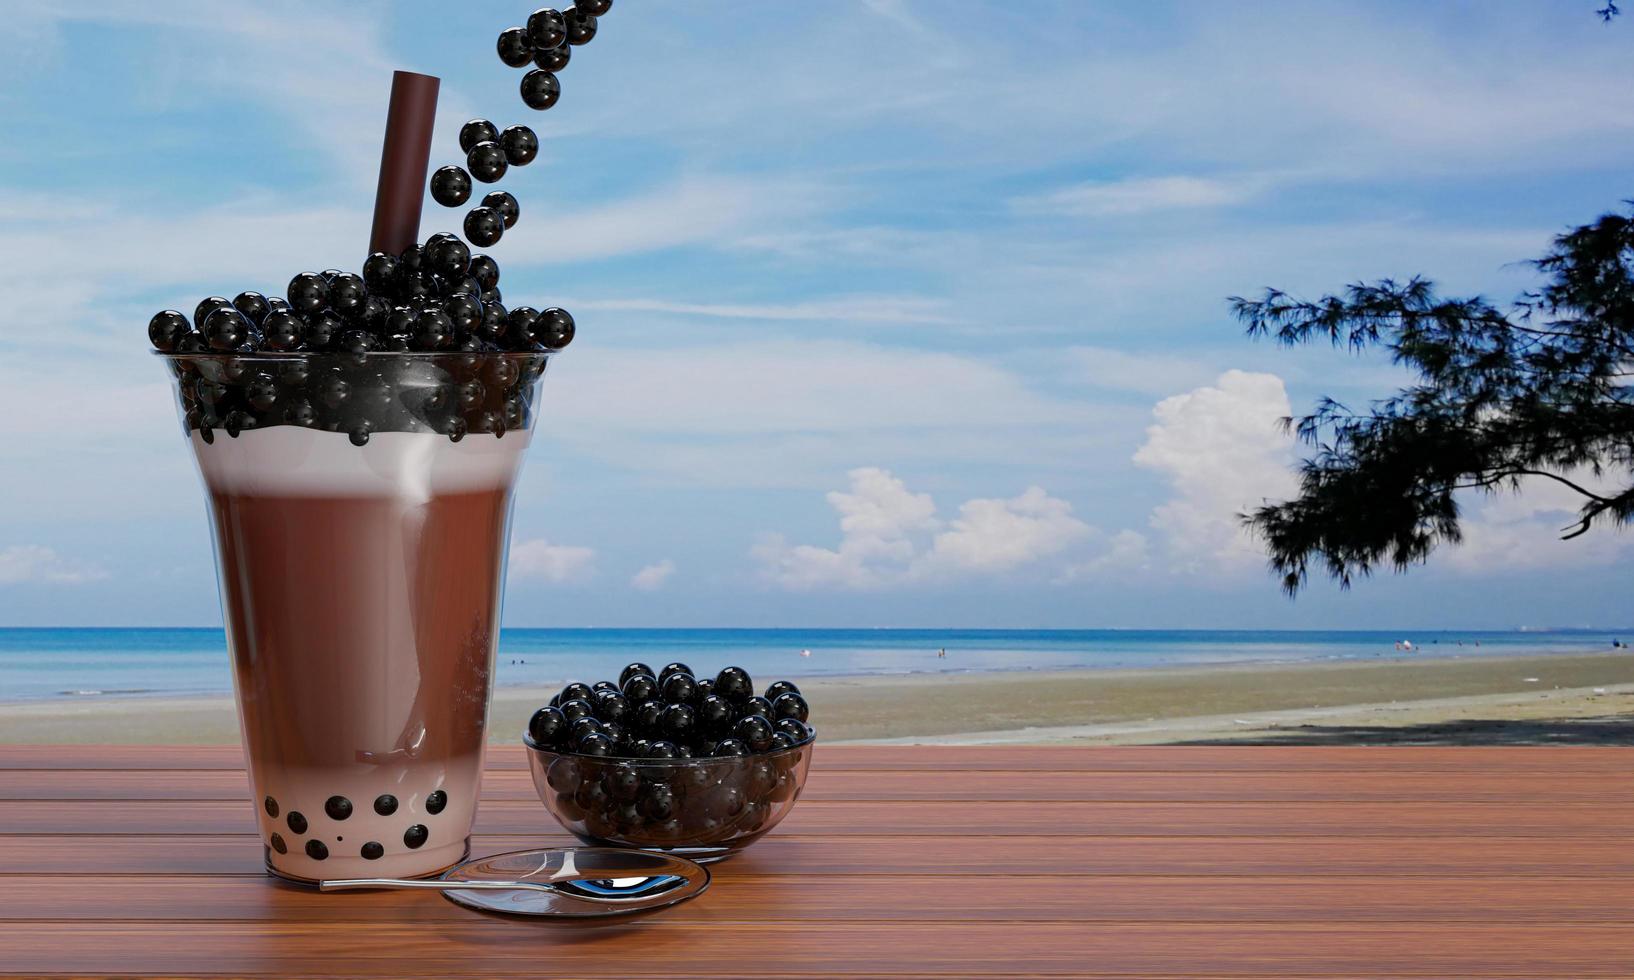 kakaopärla mjölkte, lägg svart pärla eller bubbelgelé i ett klart glas och bruna sugrör placerade på ett träbord och suddar utsikten över havet och stranden. 3d-rendering. foto